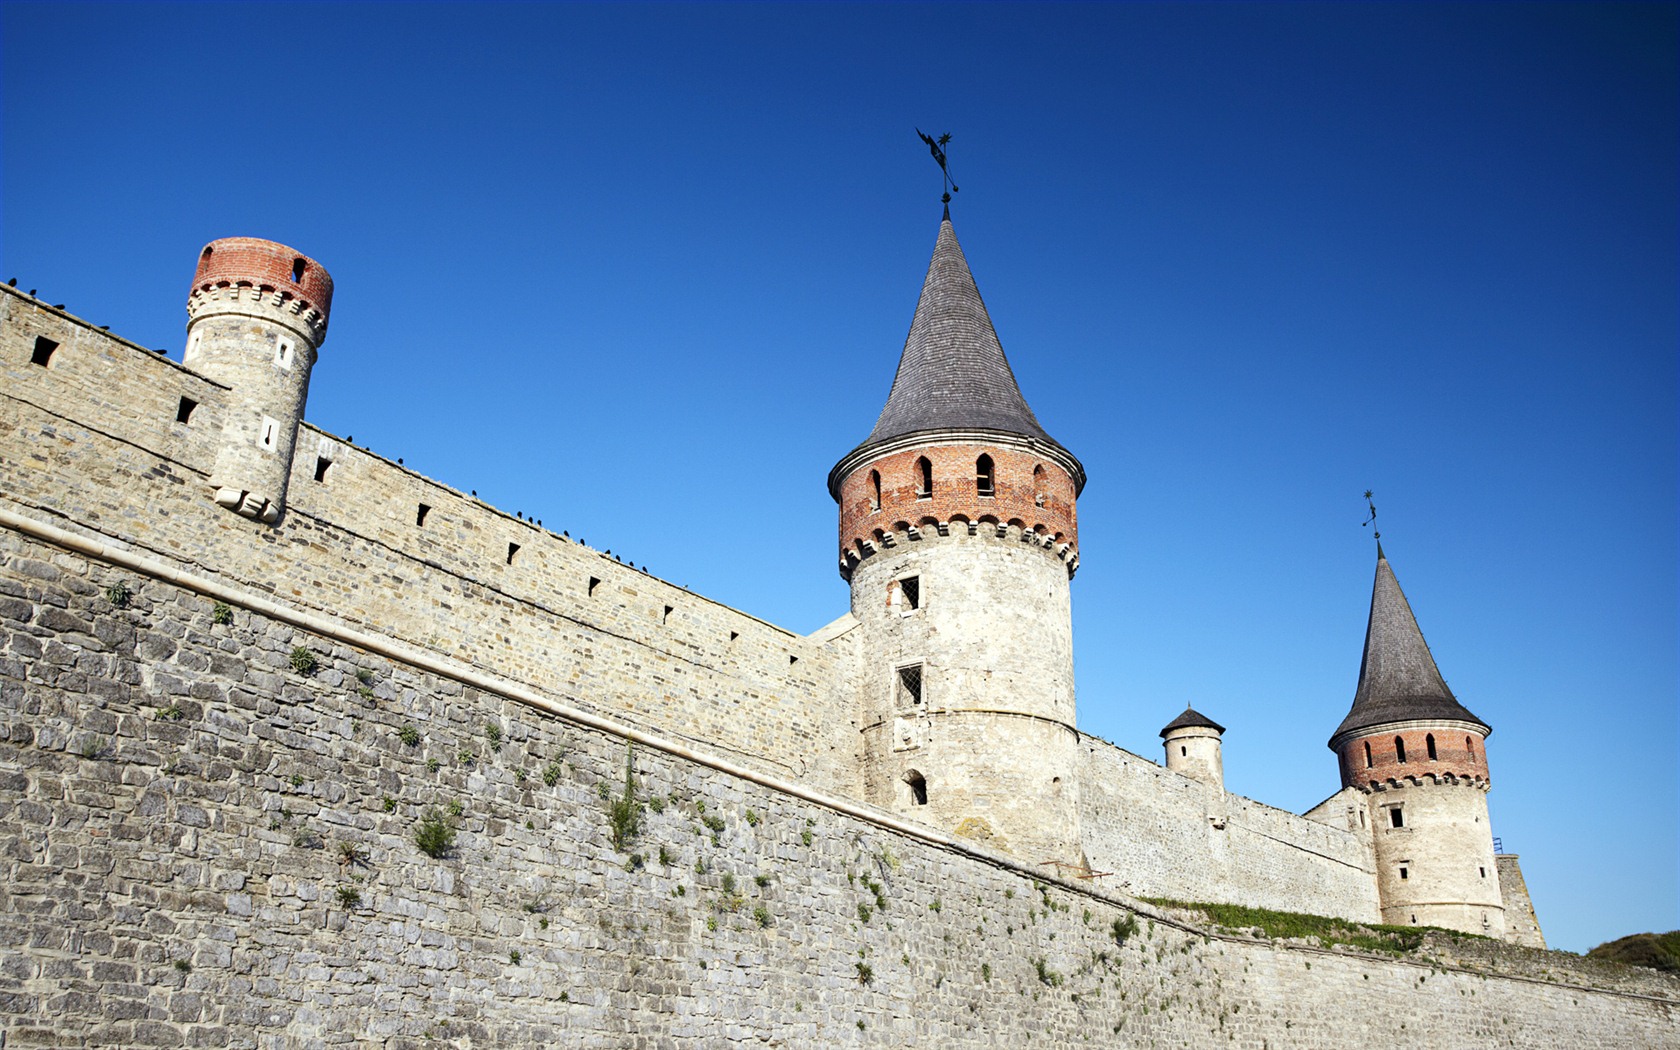 Fondos de pantalla de Windows 7: Castillos de Europa #21 - 1680x1050